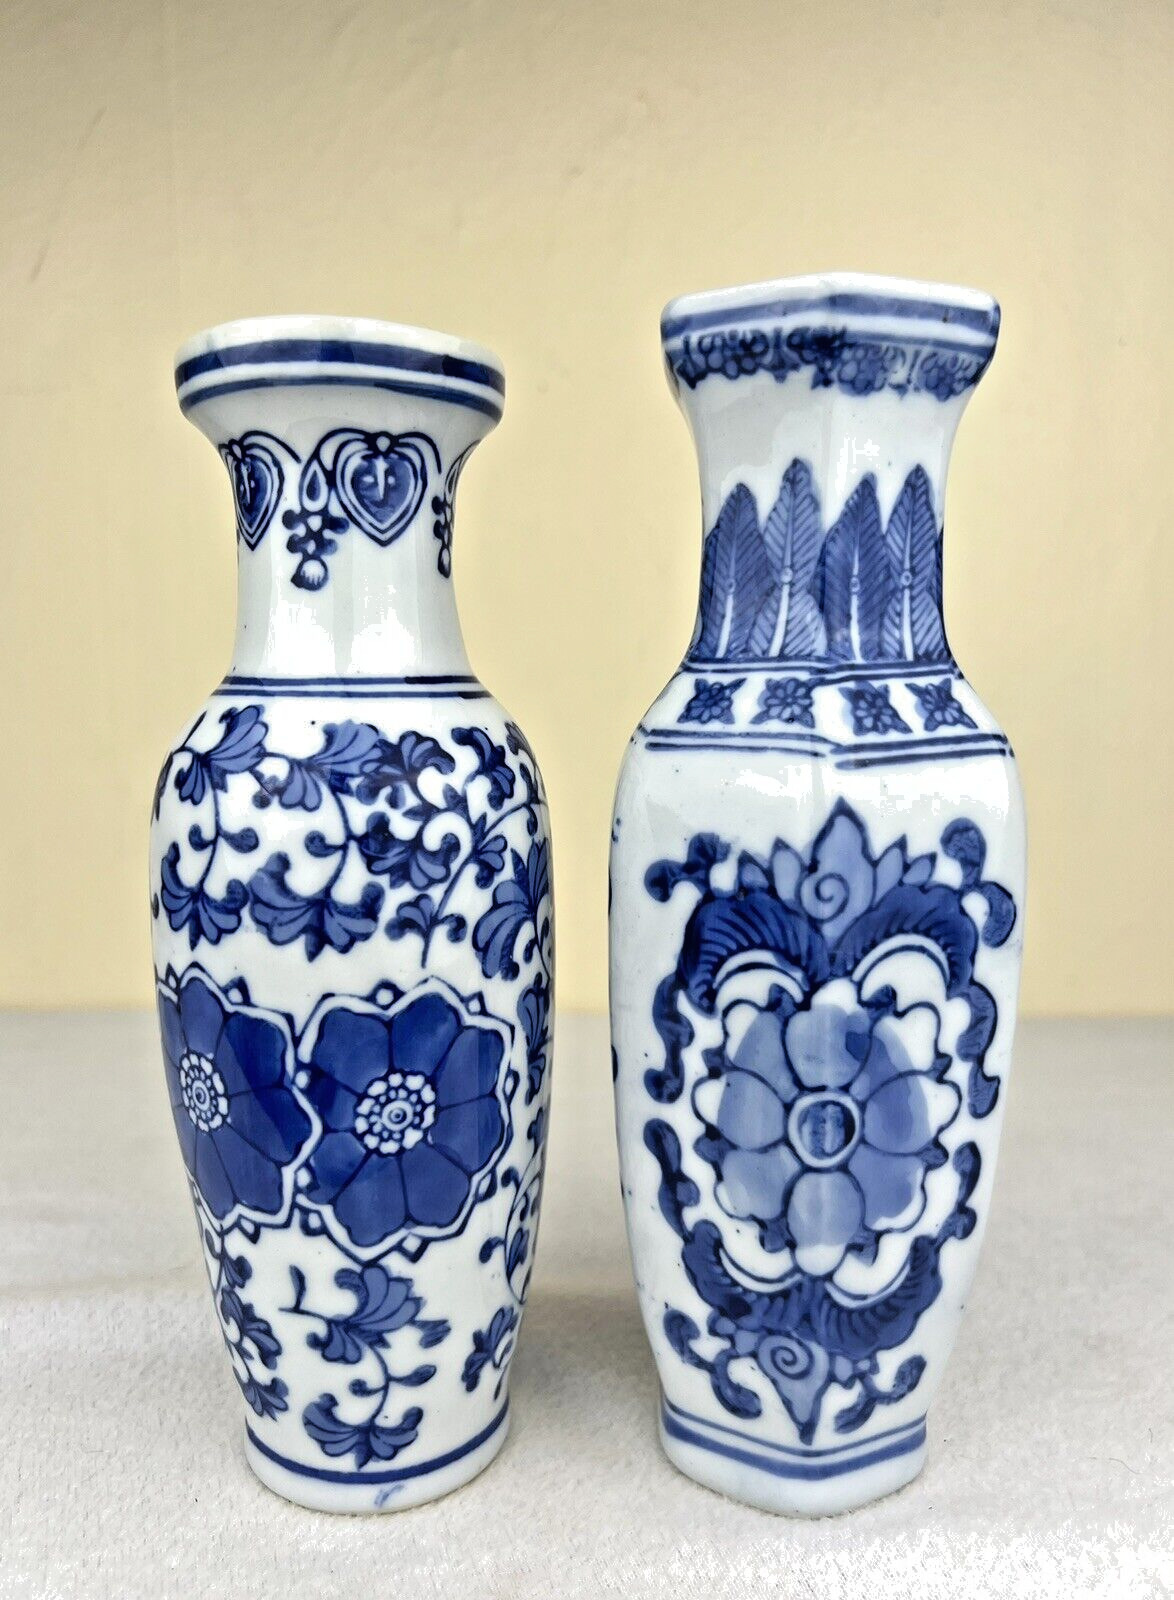 2 Vintage Asian Chinese Vases Signed Blue & White Floral Design Porcelain 8 1/8\